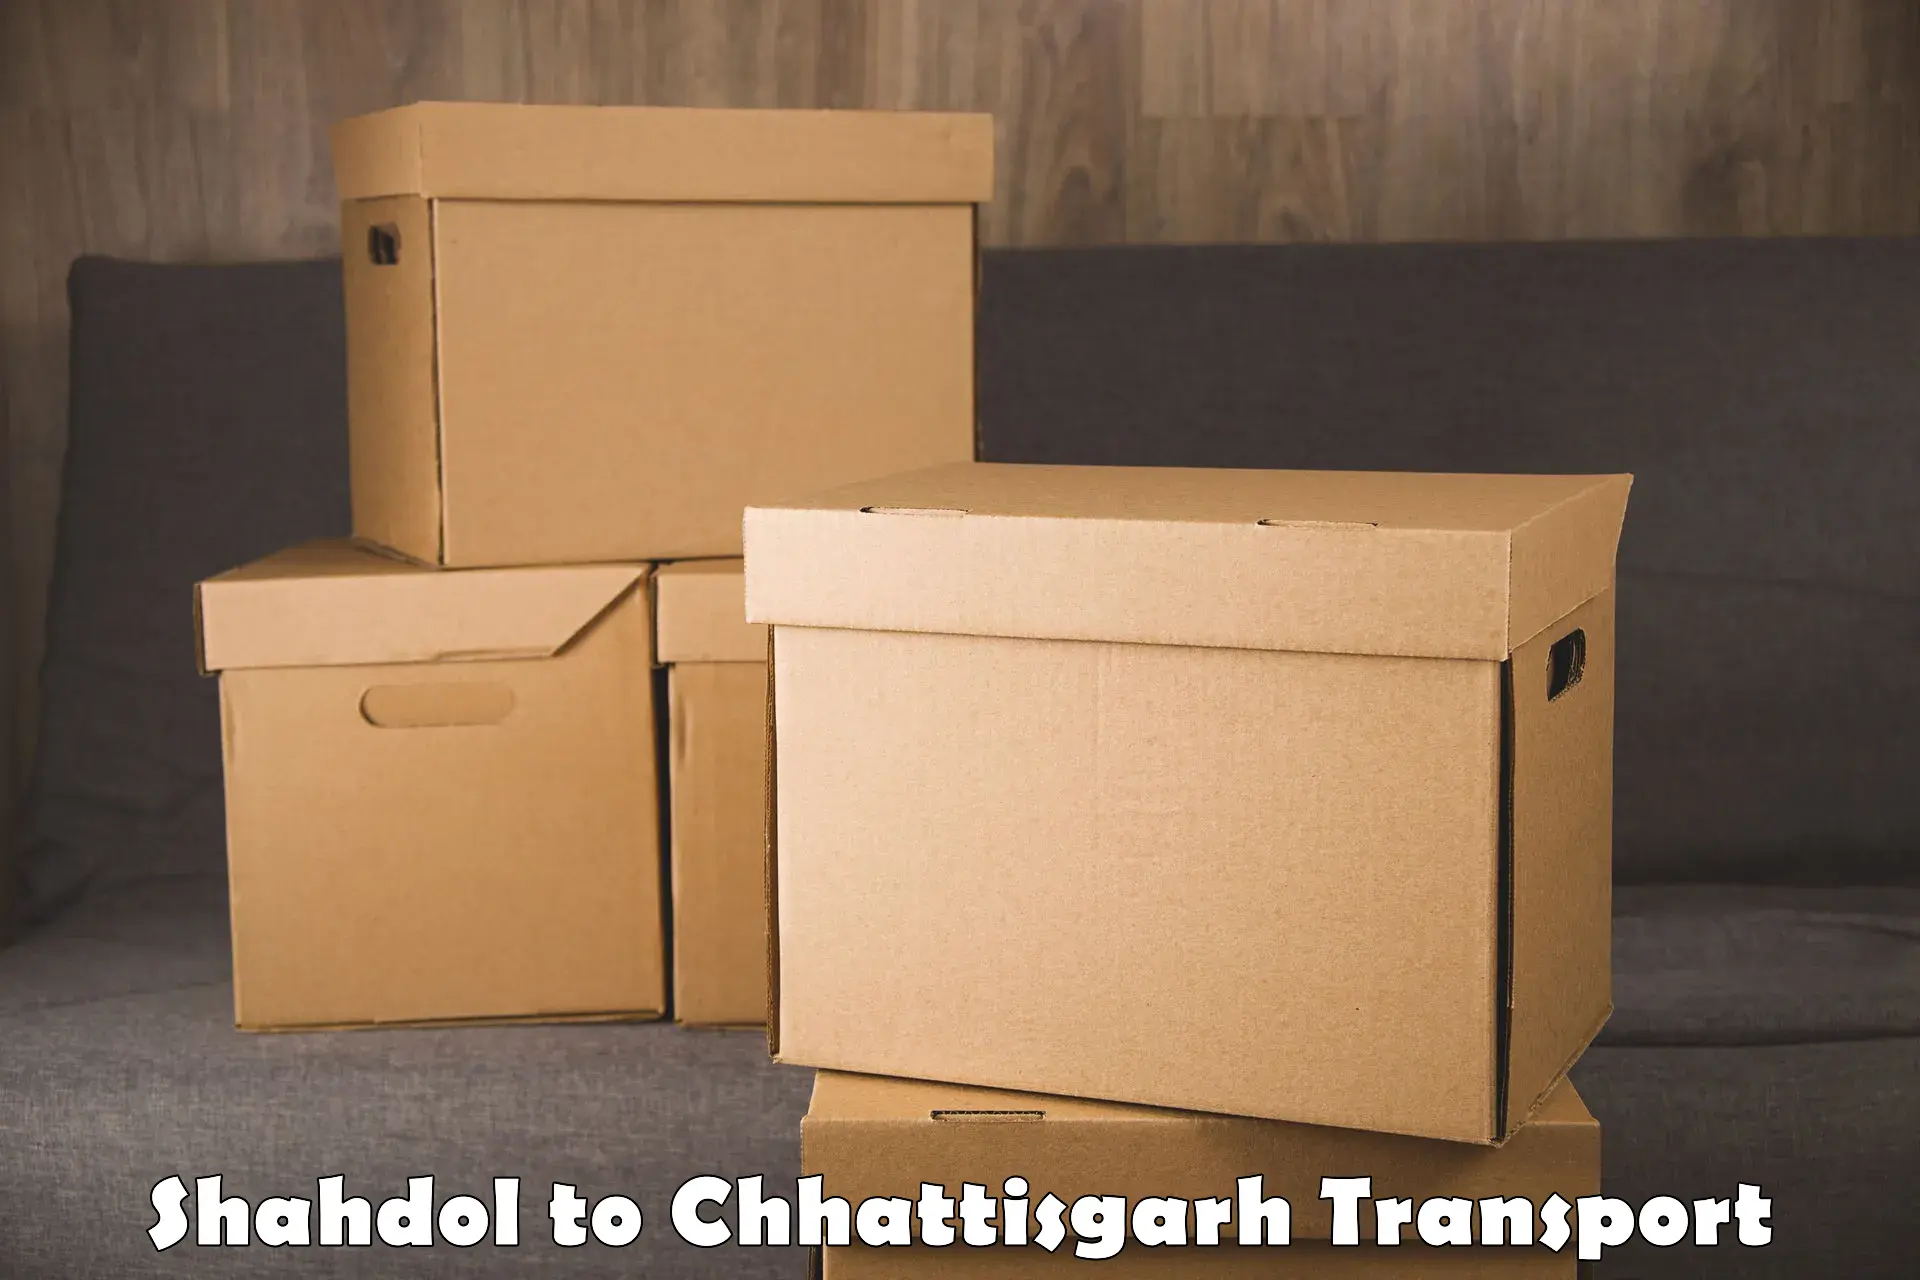 Delivery service Shahdol to Raigarh Chhattisgarh